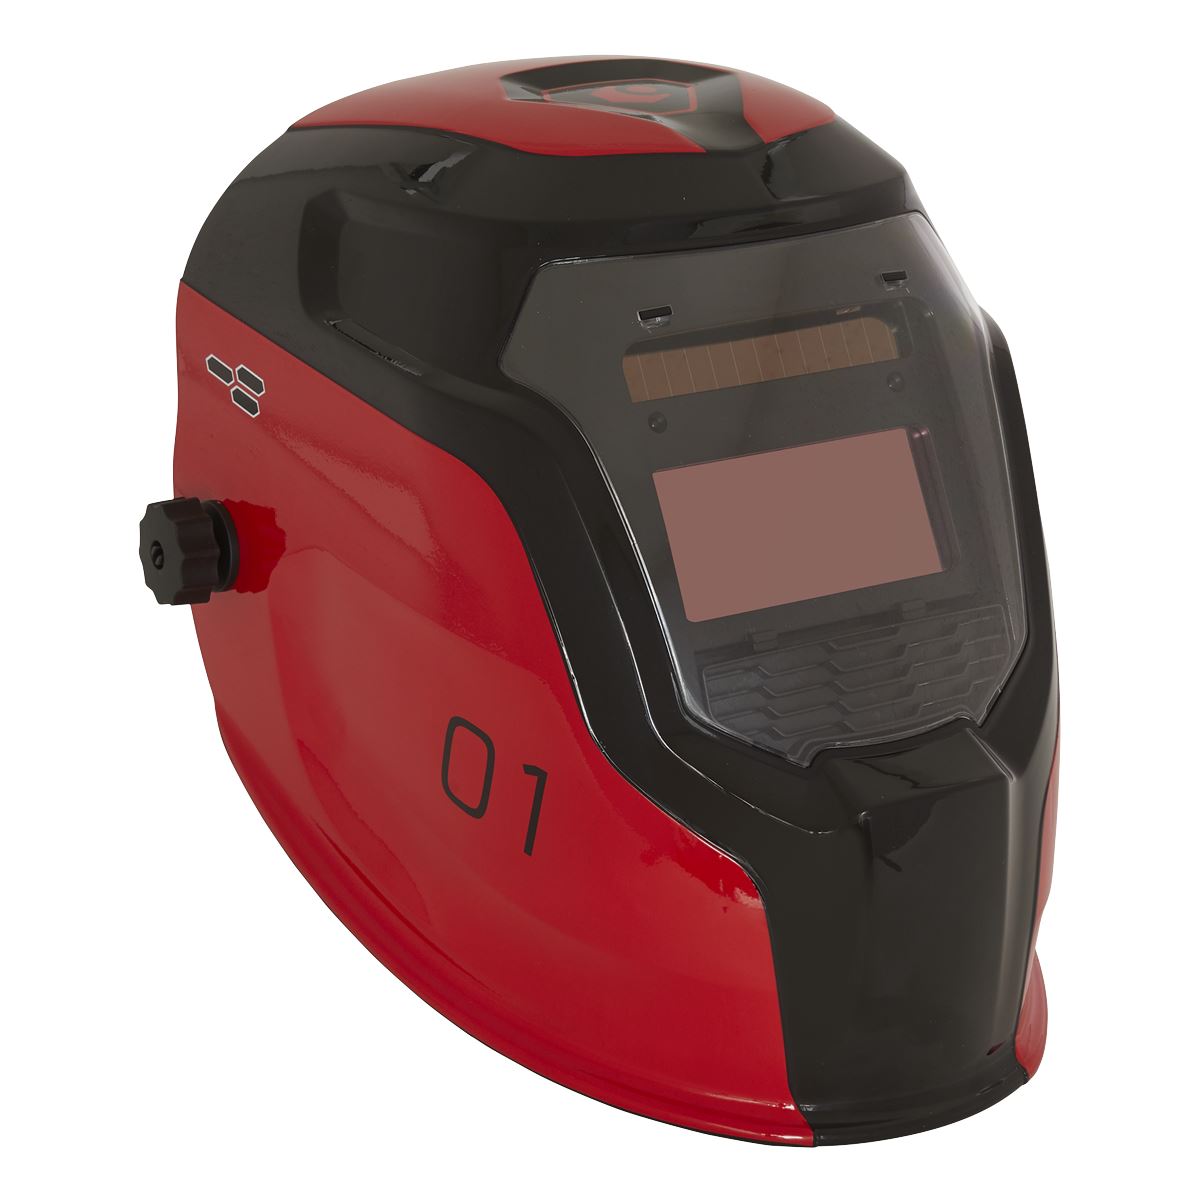 Sealey Auto Darkening Welding Helmet Shade 9-13 Red